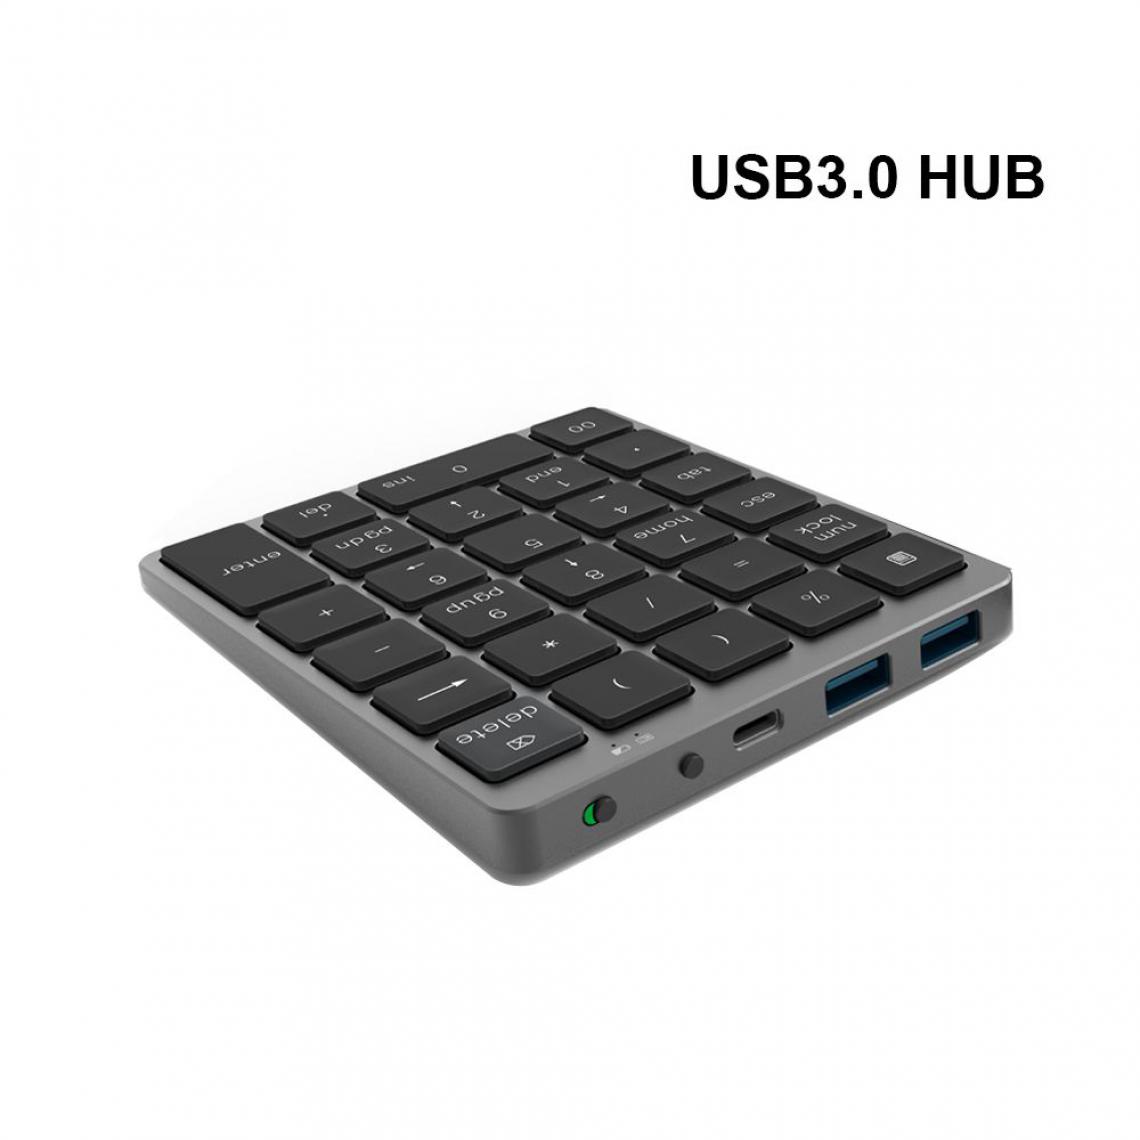 Generic - Mini-pavé numérique AVATTO ,  Bluetooth sans fil avec 28 touches et USB 3.0 Hub  en alliage d’aluminium pour ordinateur Windows, Mac OS et Android 12.1 * 10 * 11.2 cm -  Noir   - Clavier